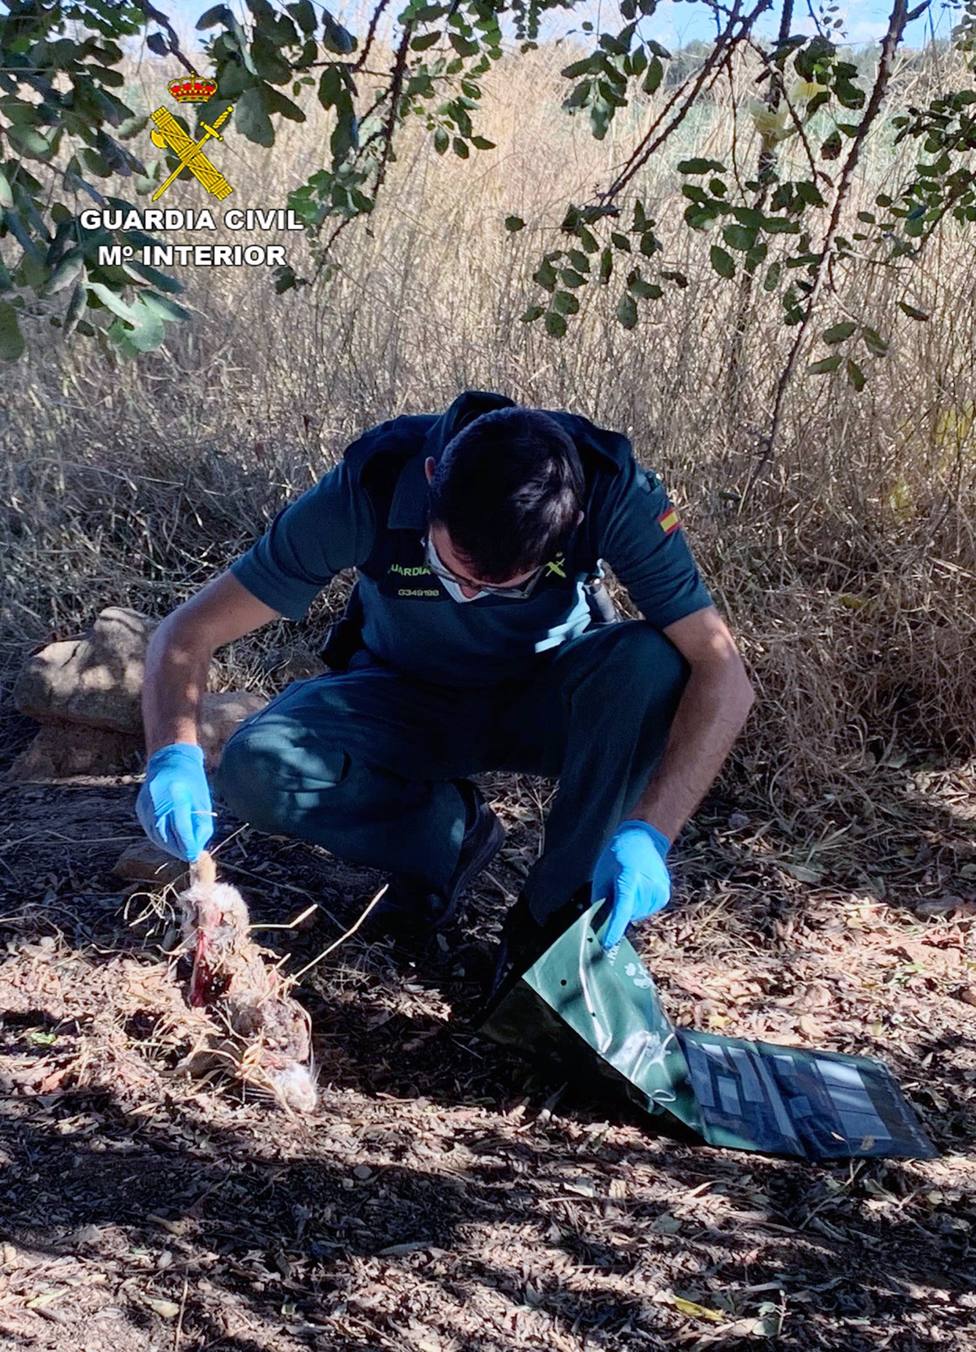 Sucesos.- La Guardia Civil investiga a cuatro personas por utilizar presuntamente cebos envenenados en fincas agrÃ­colas